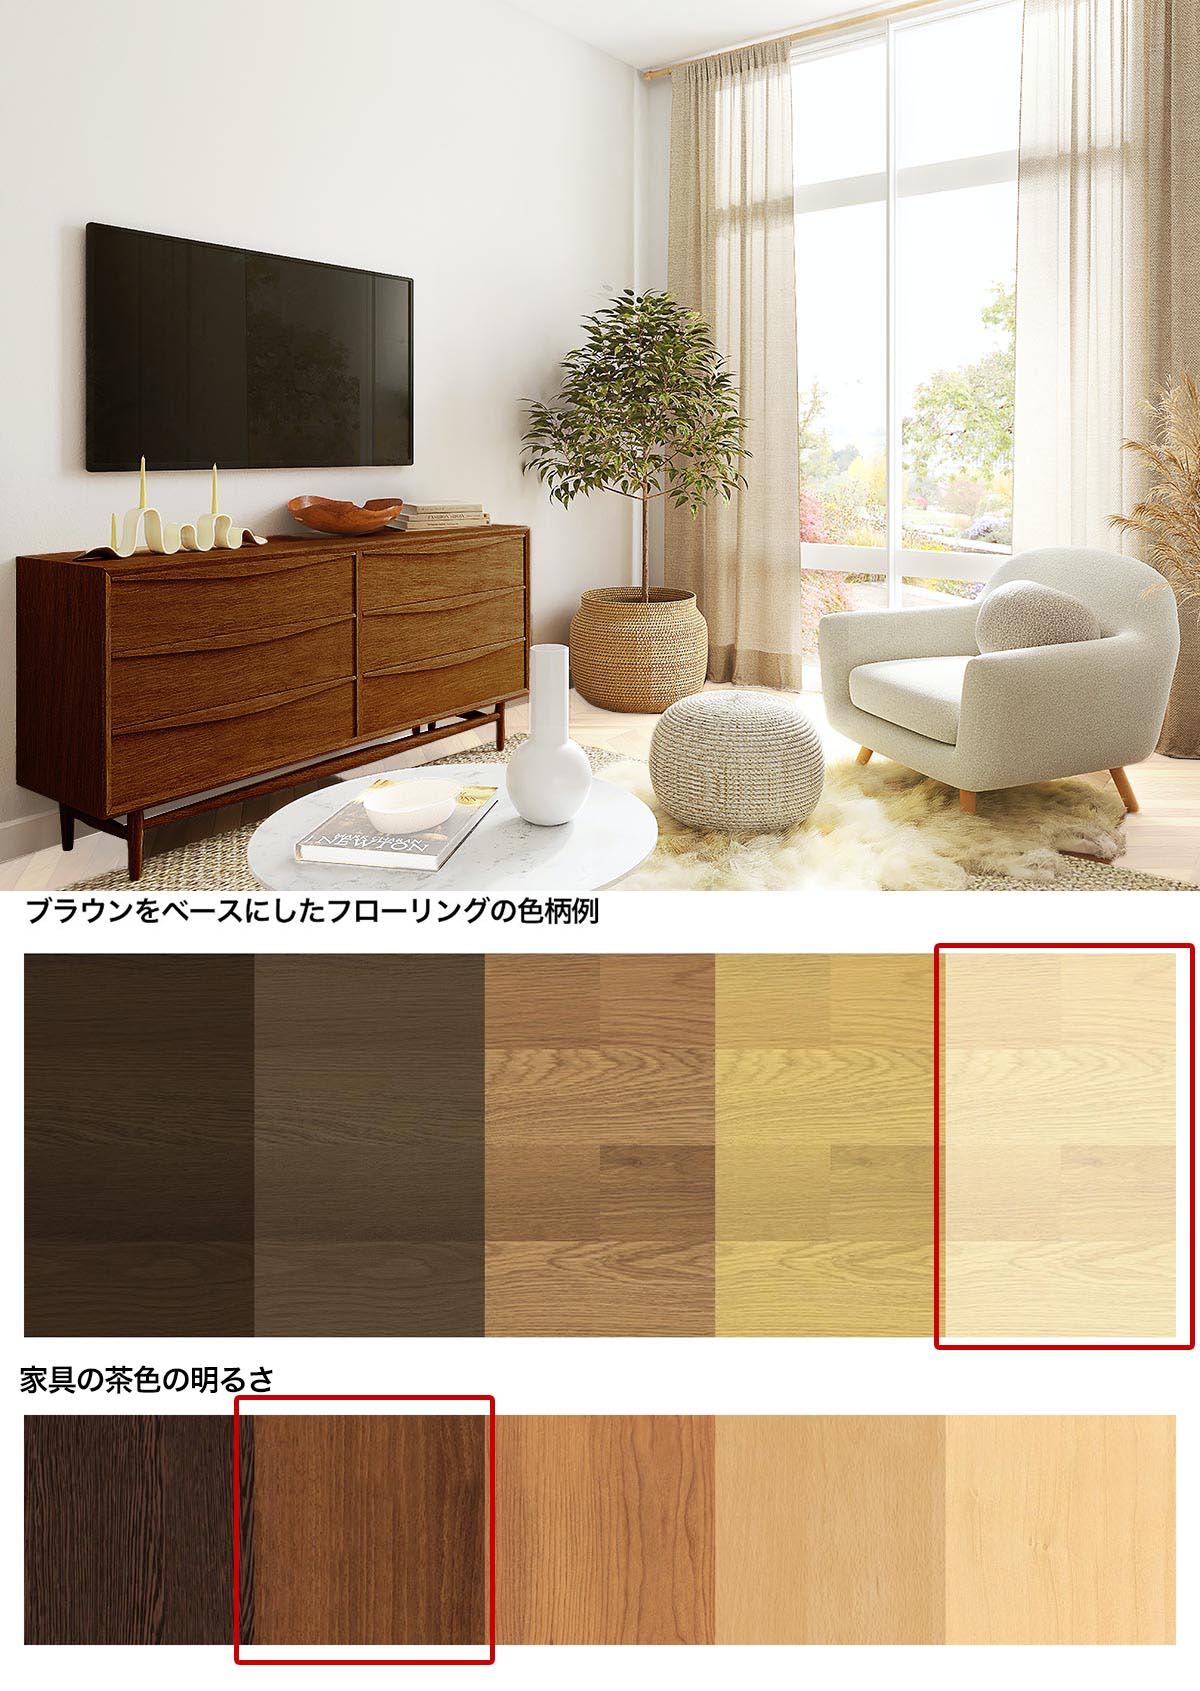 白い床と濃い茶色の家具